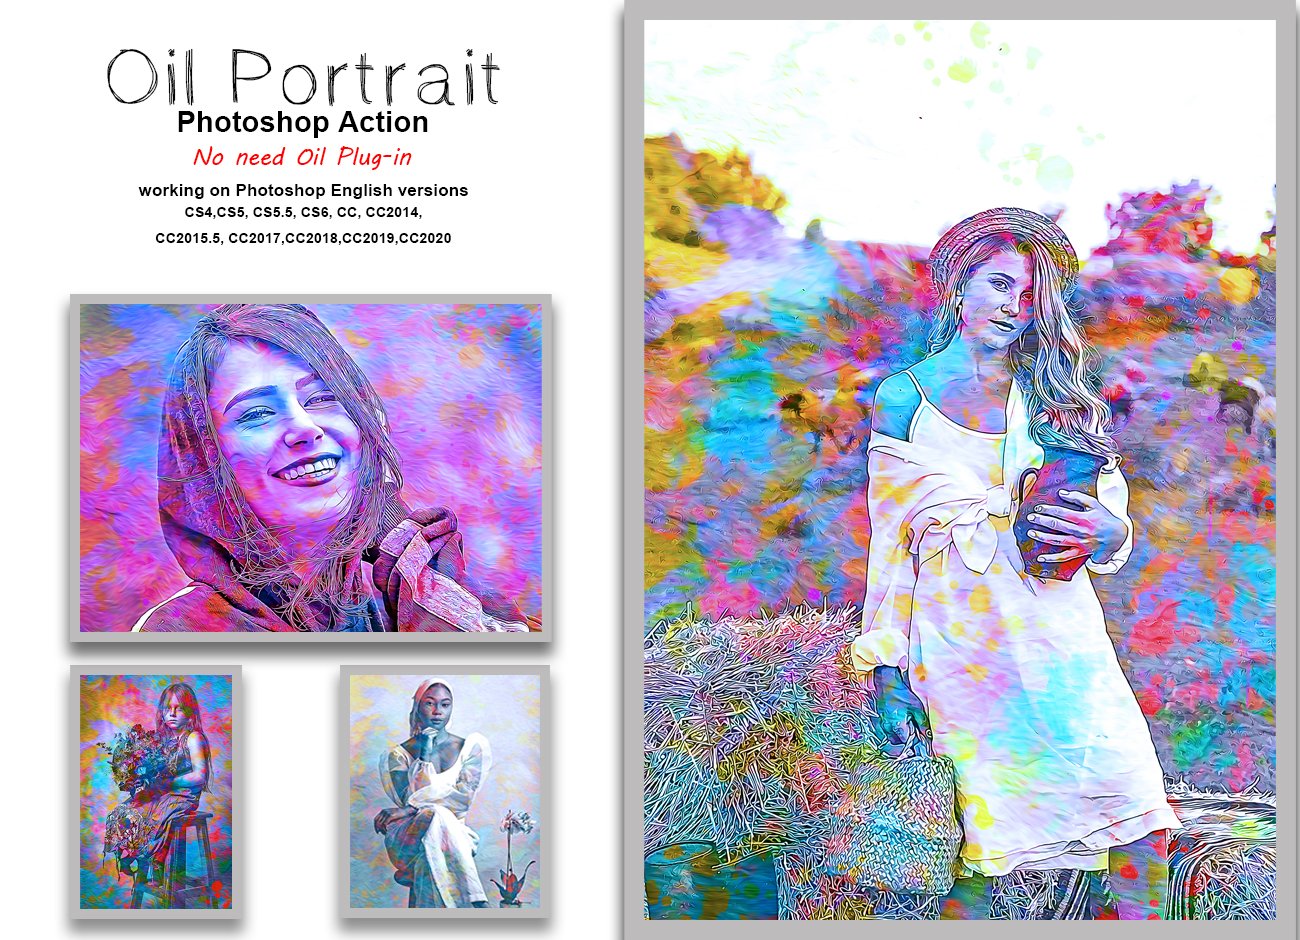 Oil Portrait Photoshop Actioncover image.